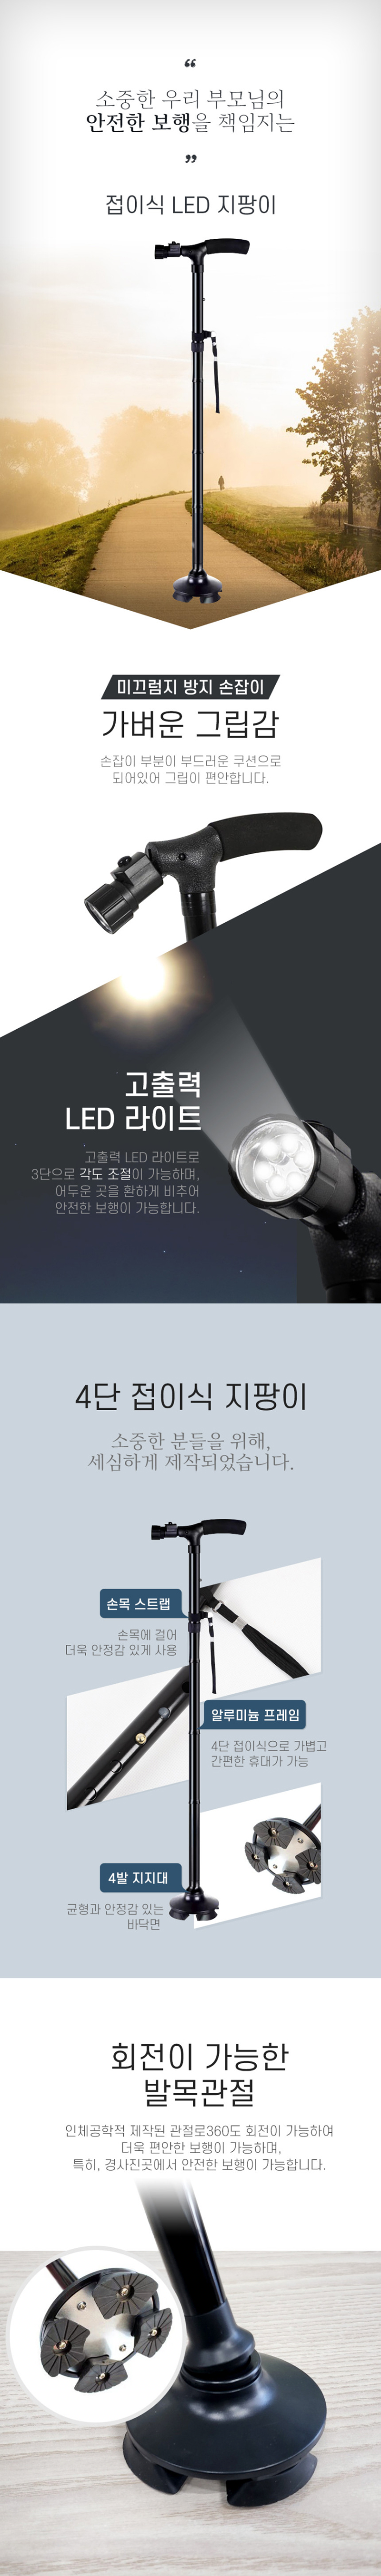 LED-d1.jpg